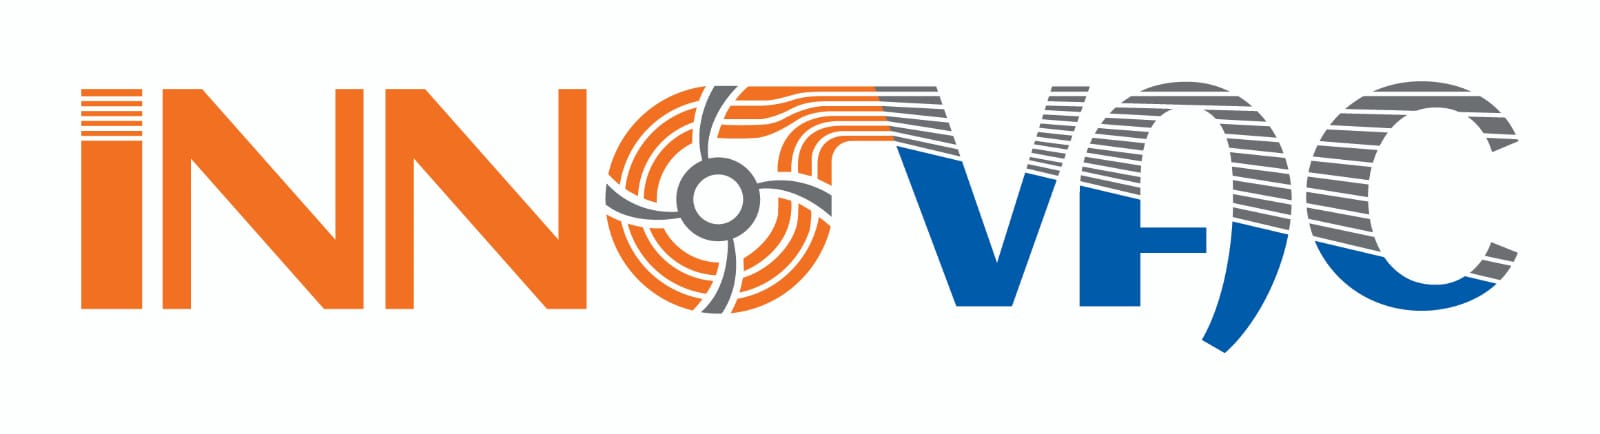 innovac logo